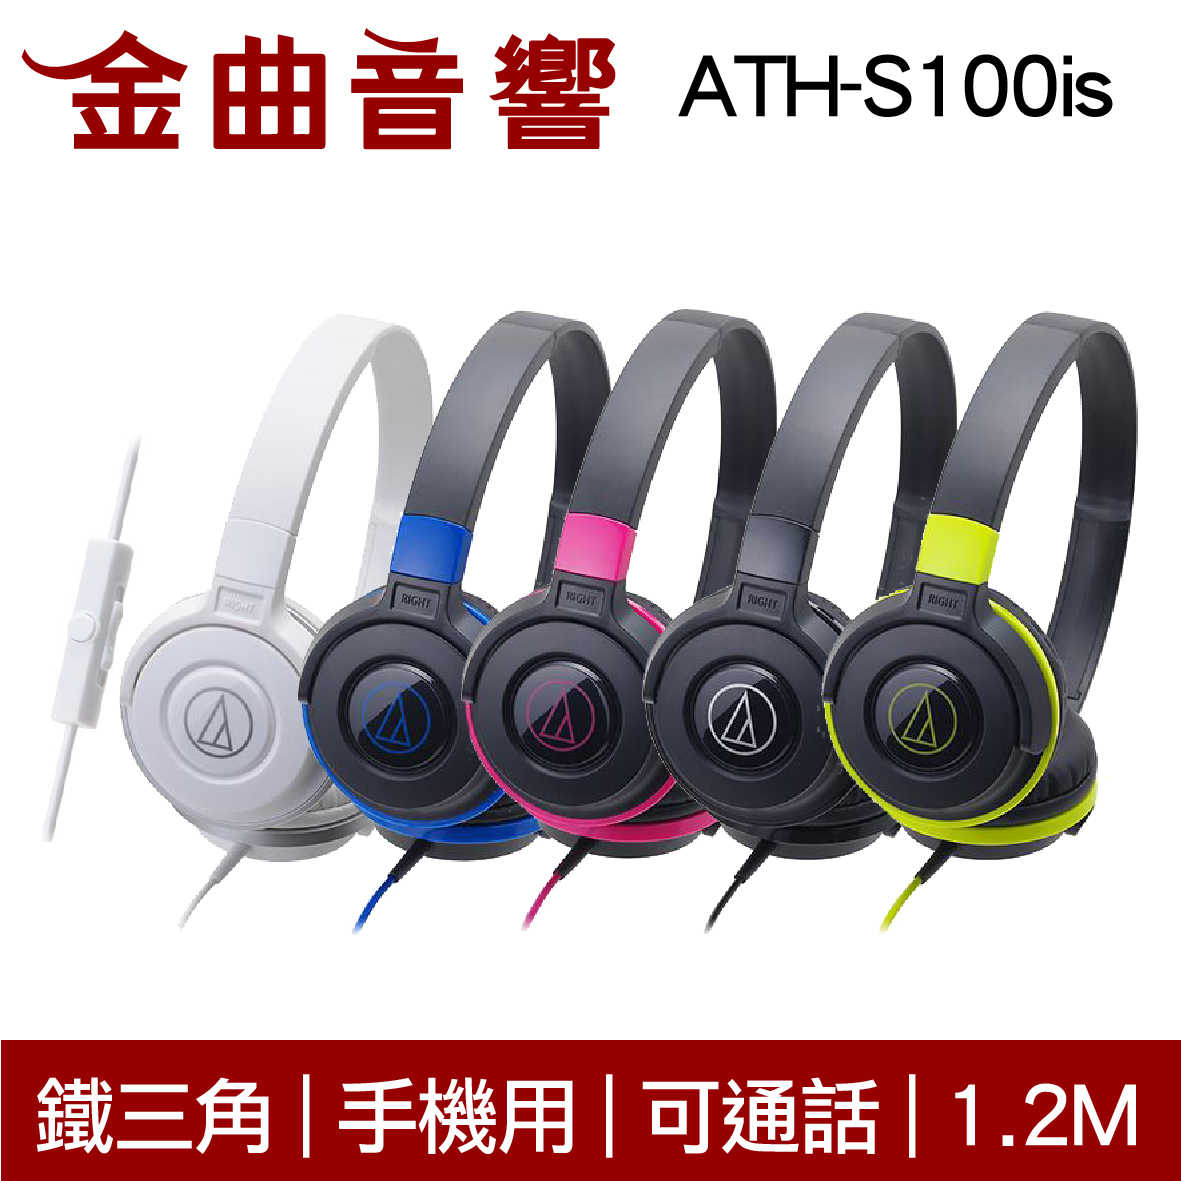 鐵三角 ATH-S100is 黑綠色 兒童耳機 大人 皆適用 耳罩式 有麥克風版 IOS/安卓適用 | 金曲音響